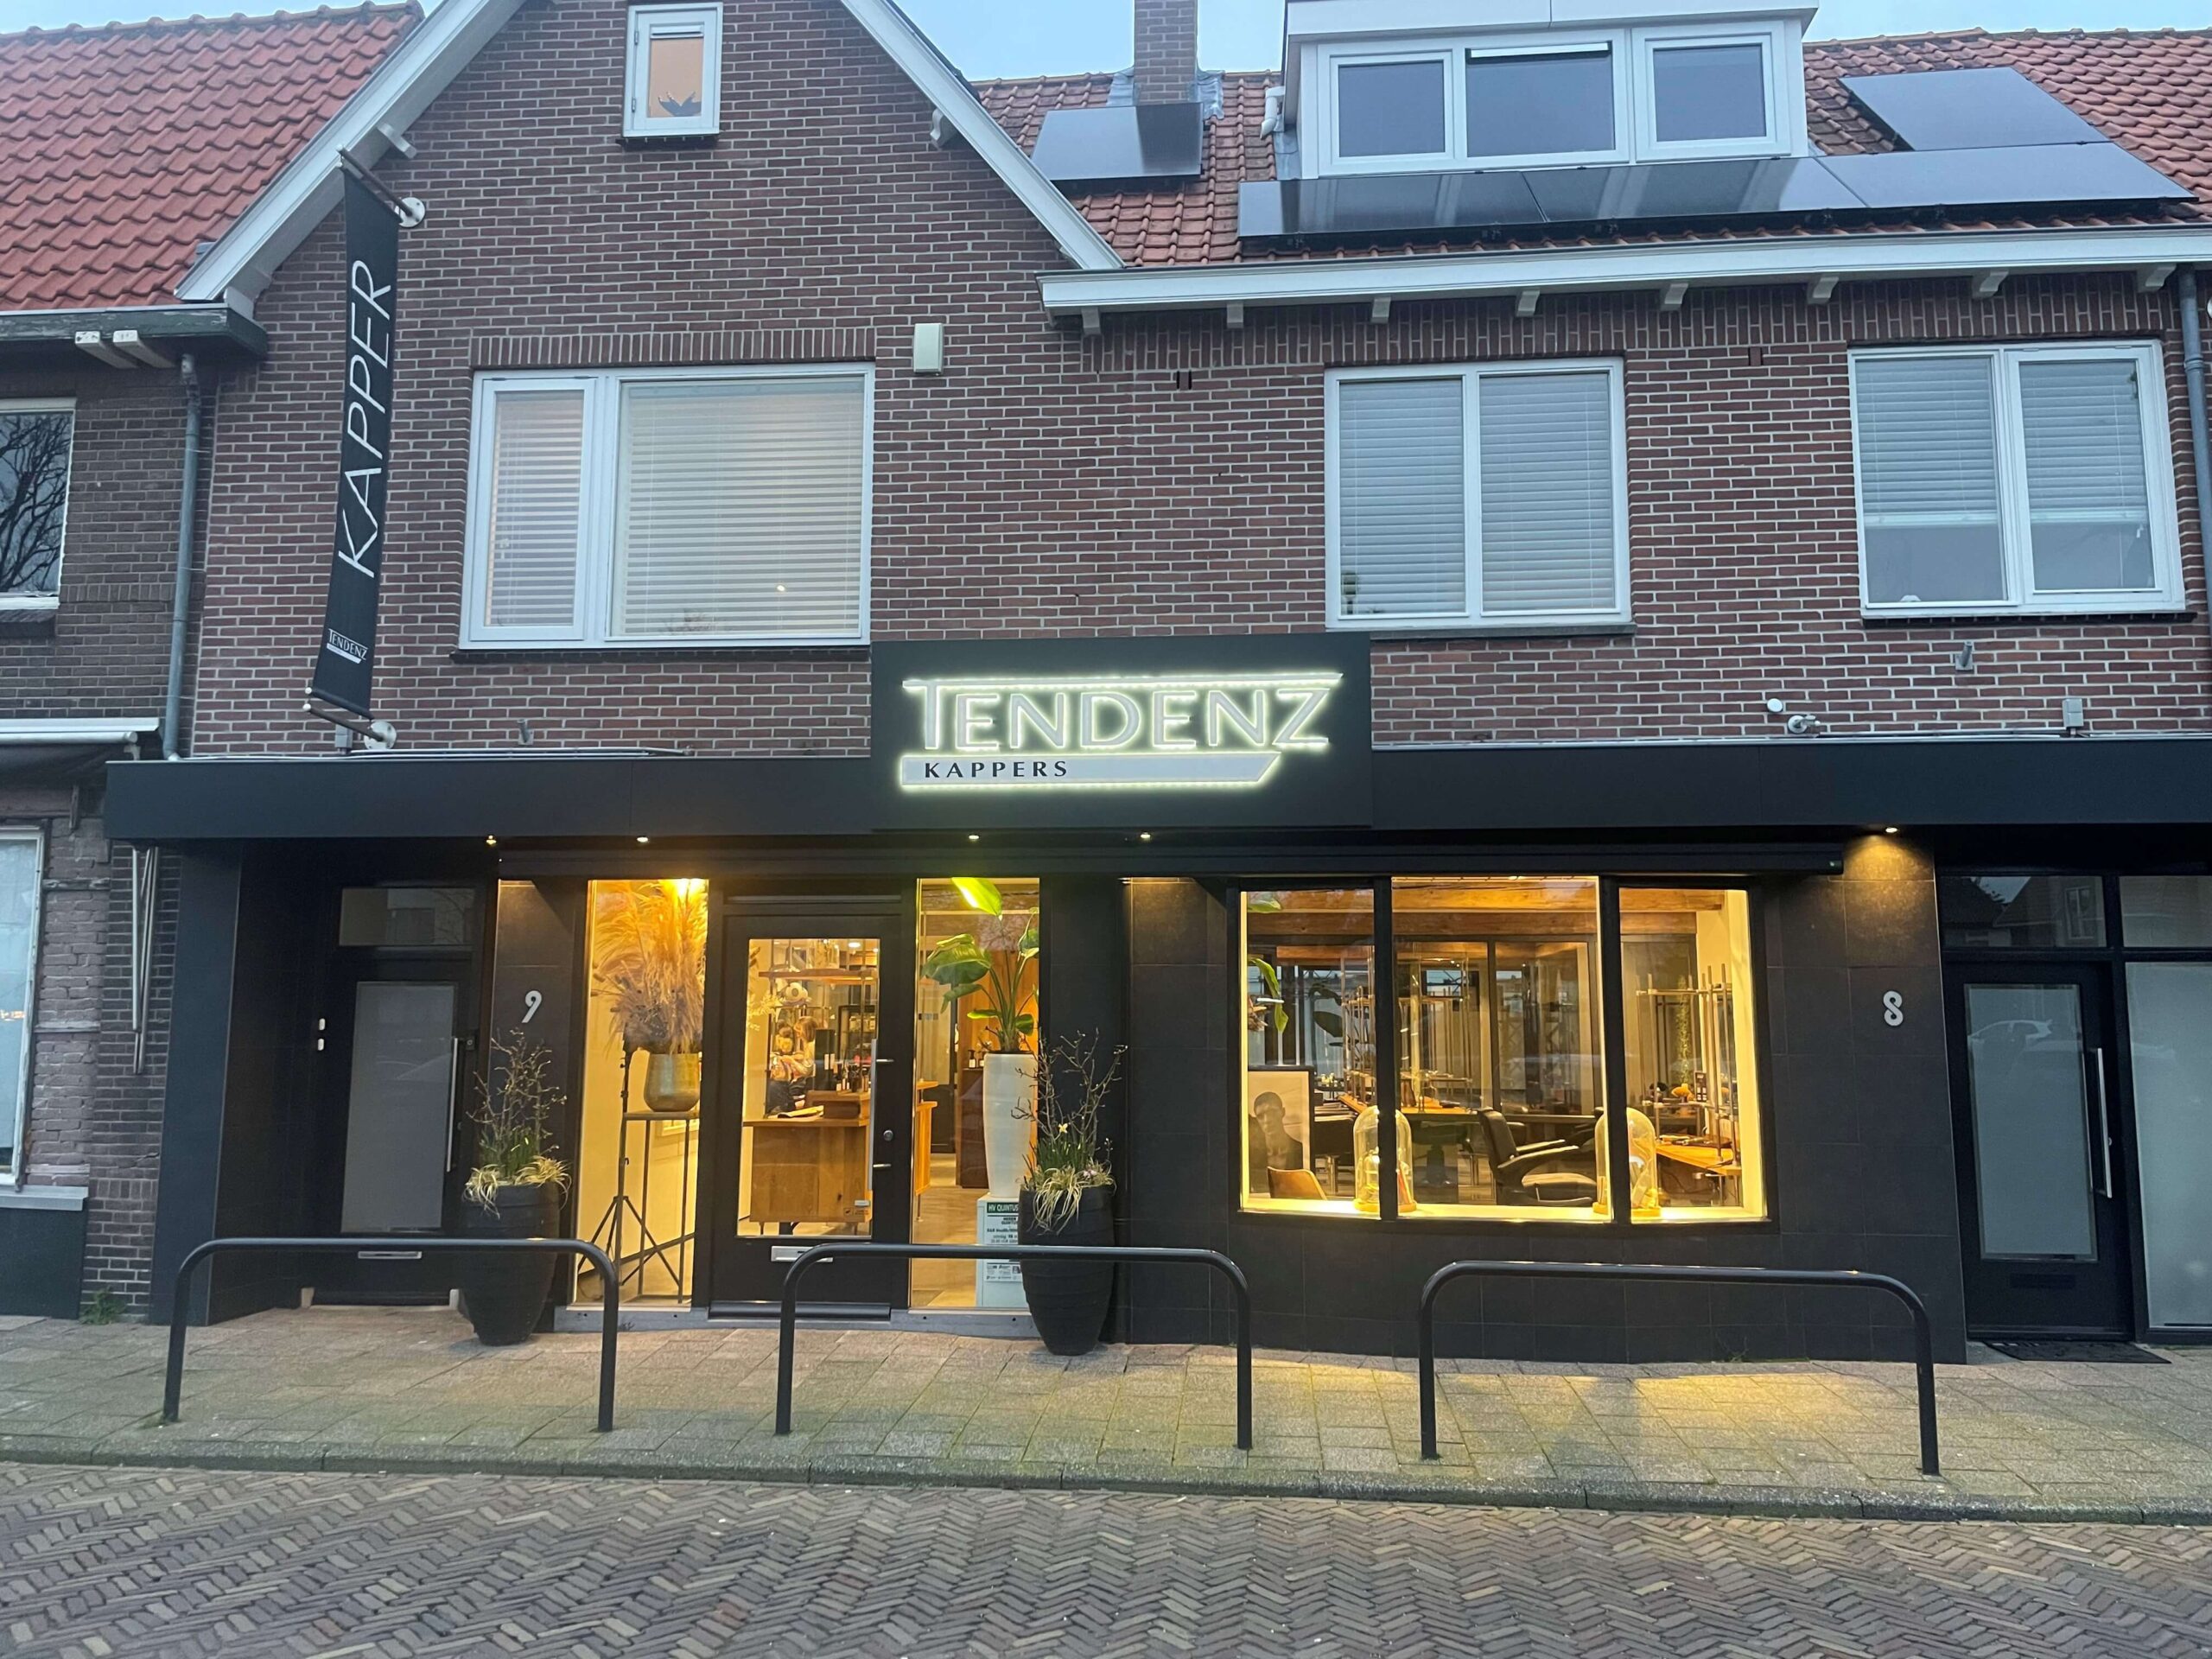 De voorgevel van de winkel Tendenzkappers in Honselersdijk.